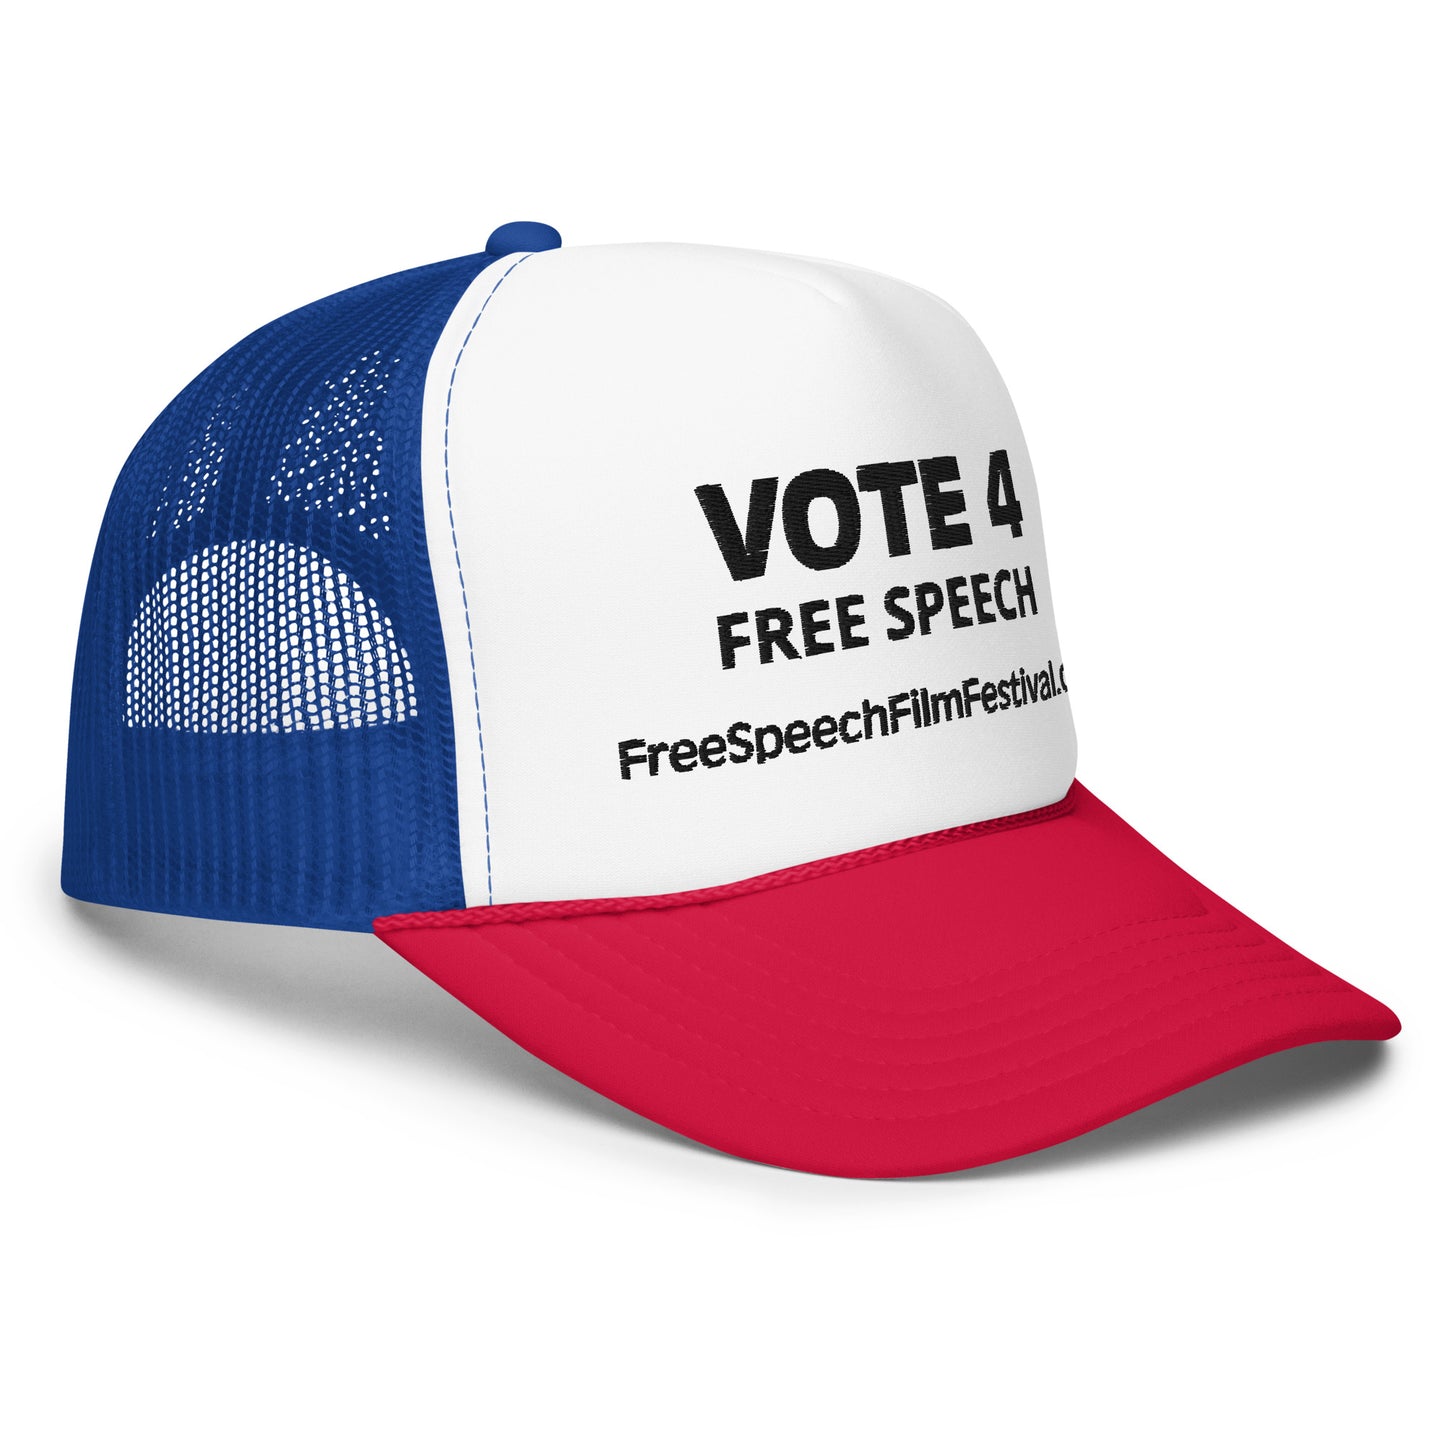 VOTE 4 FREE SPEECH HAT